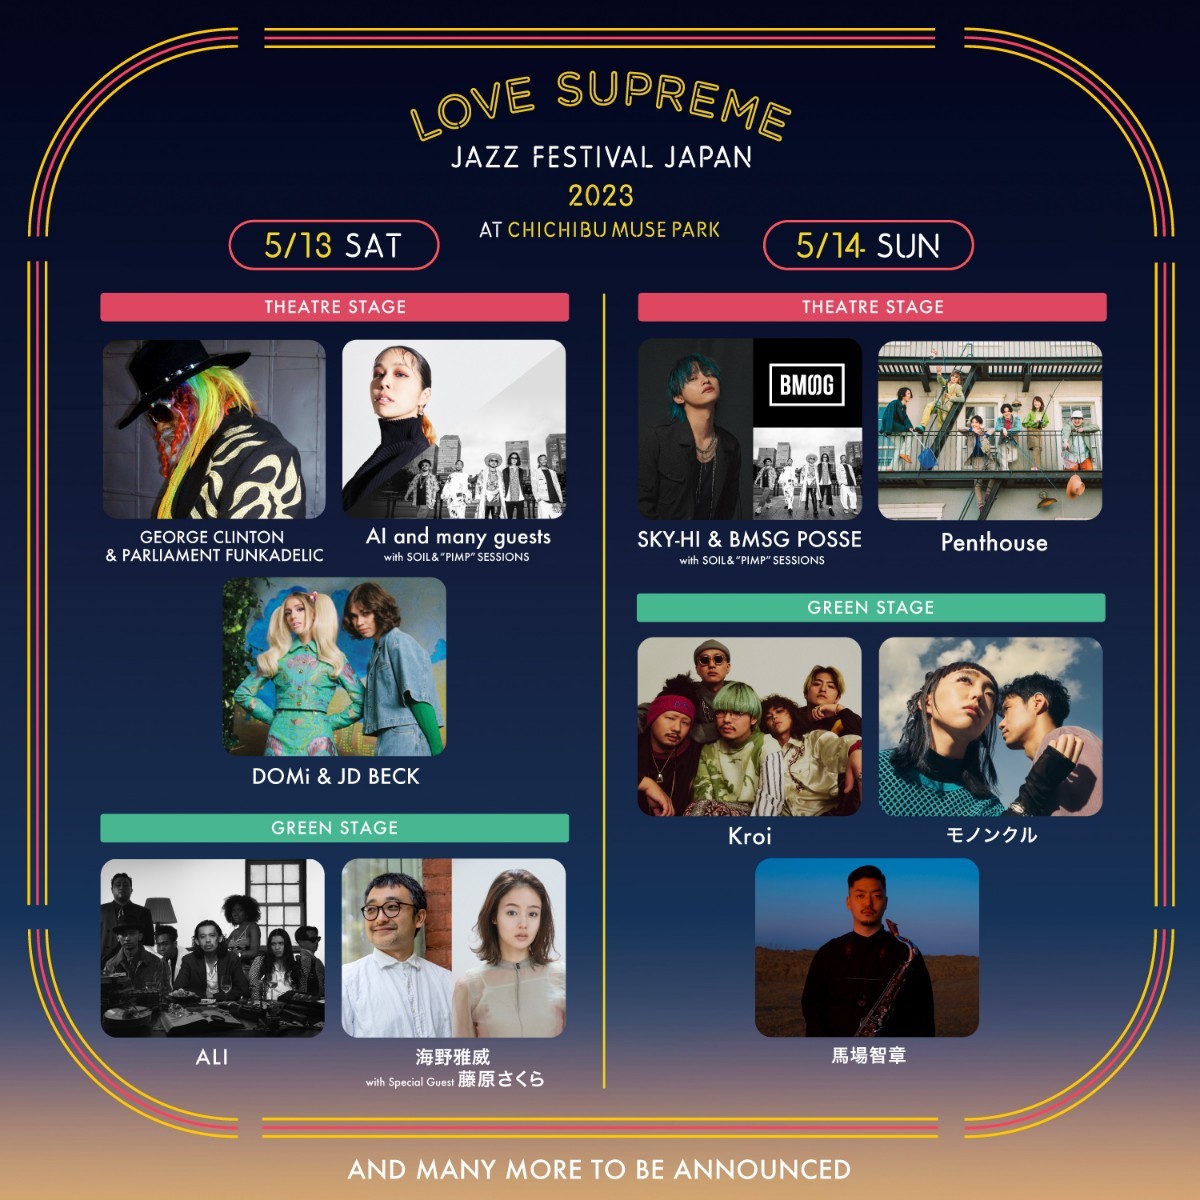 LOVE SUPREME JAZZ FESTIVAL JAPAN 2023 05月 13日 (土)~05月 14日 (日) 埼玉県 芝生自由1日券 1枚 複数枚対応可能の画像1